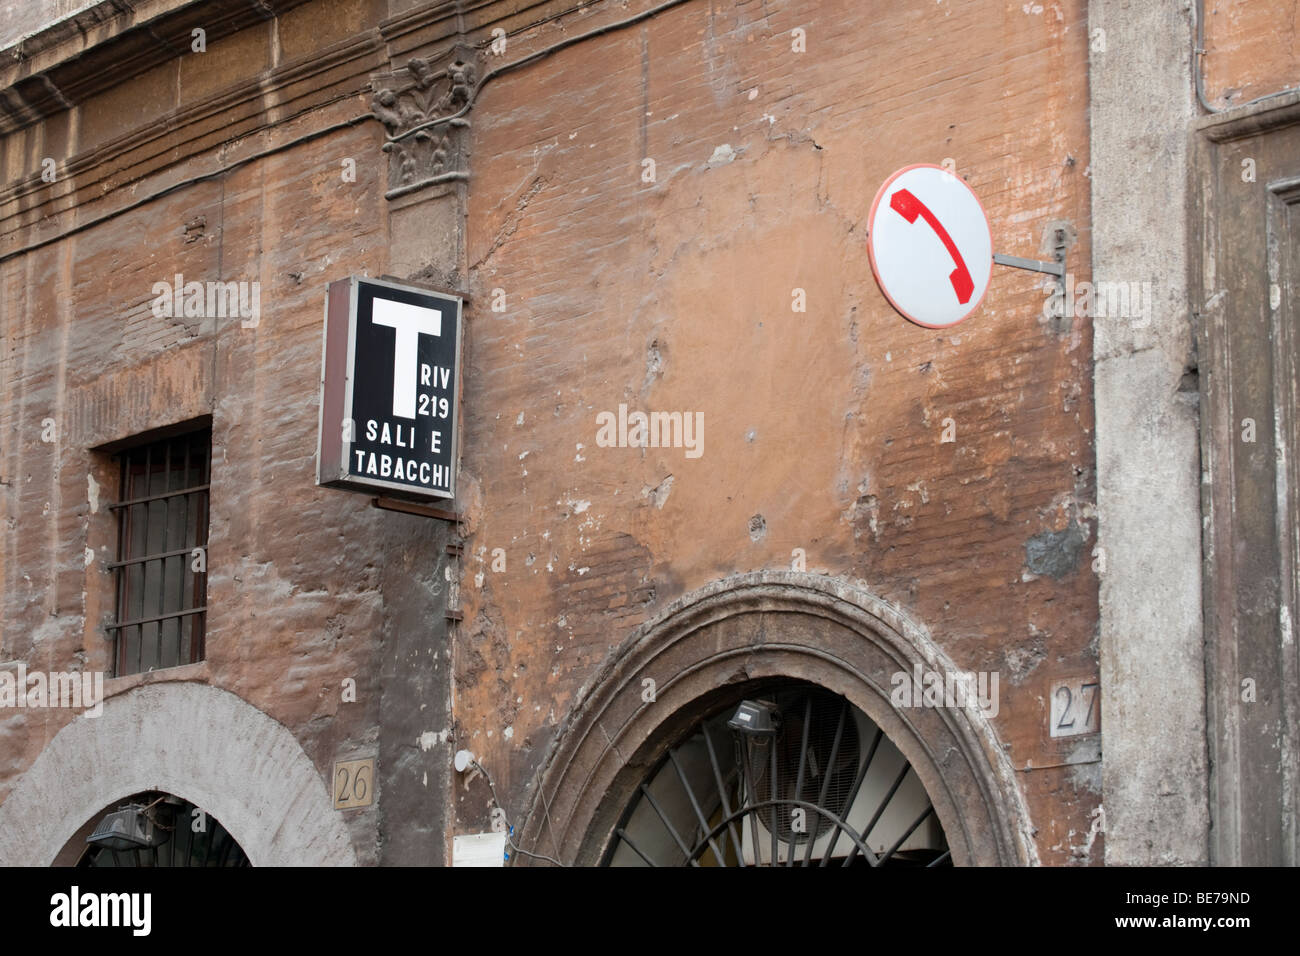 Italienische Sali e Tabacchi (Tabak- und Salz) Zeichen und ein öffentliches Telefon anmelden Via dei Coronari in Rom, Italien Stockfoto